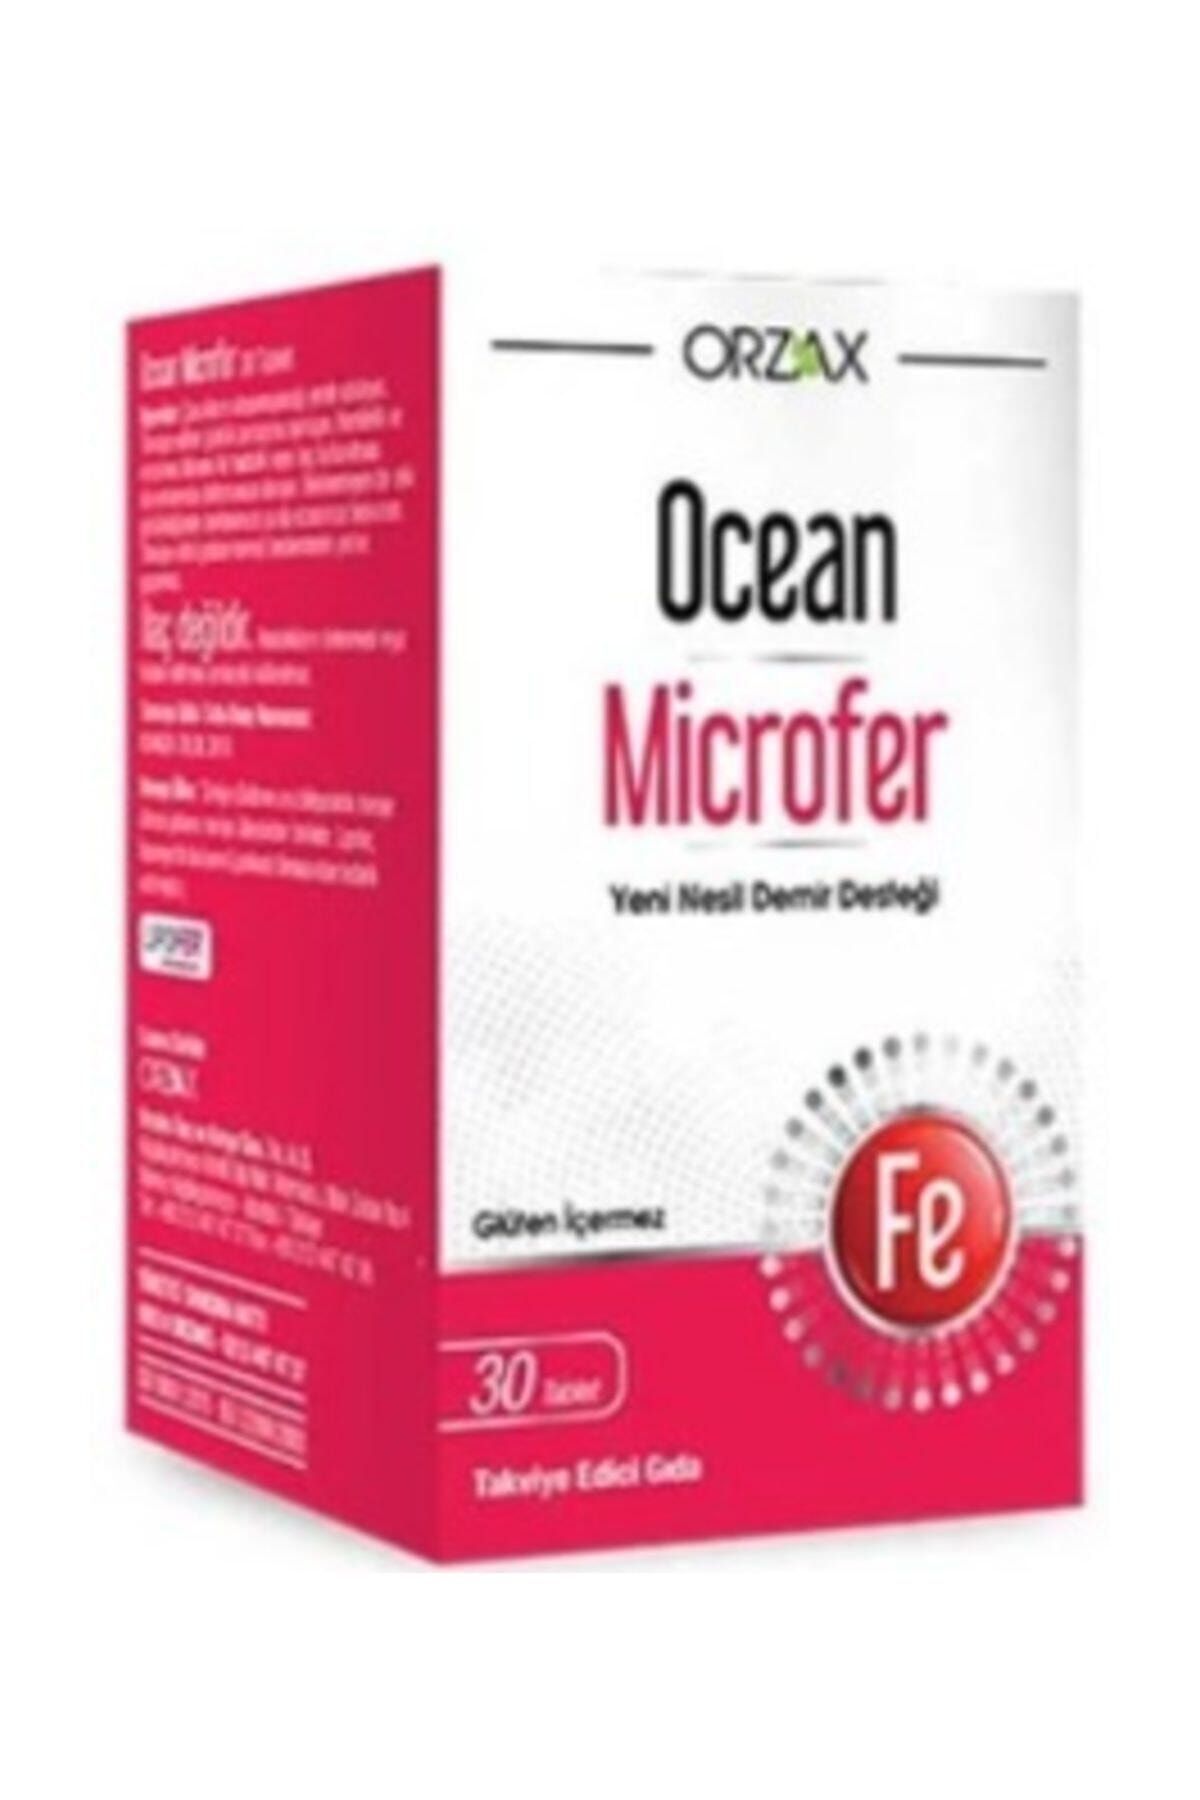 ocean ocean microfer 30 tablet fiyati yorumlari trendyol